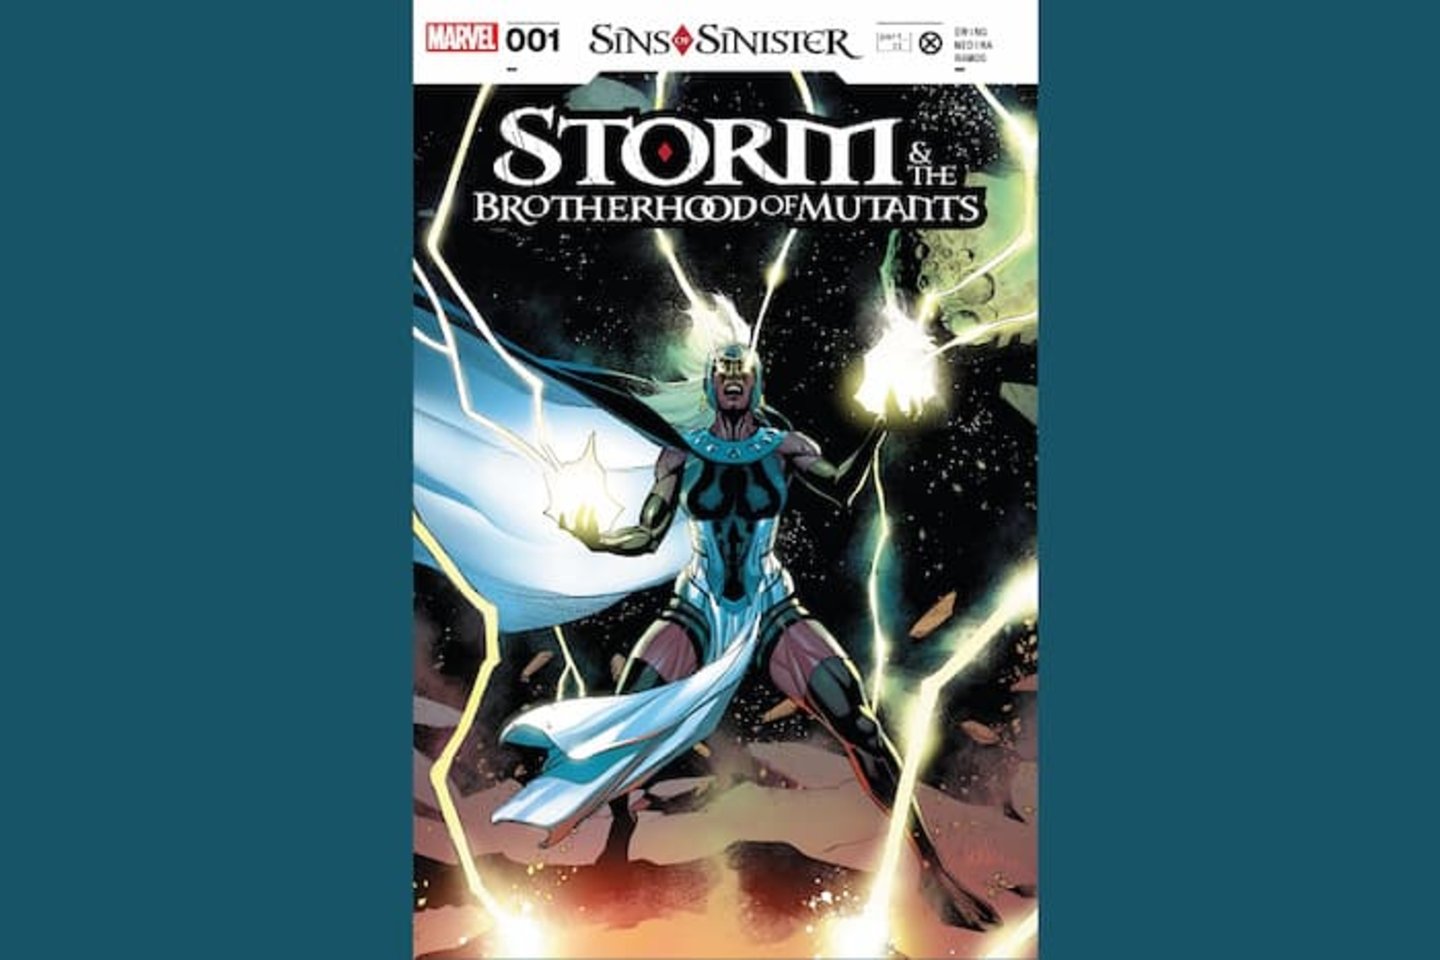 Portada del volumen #1 del cómic Storm & the Brotherhood of Mutants, de Marvel